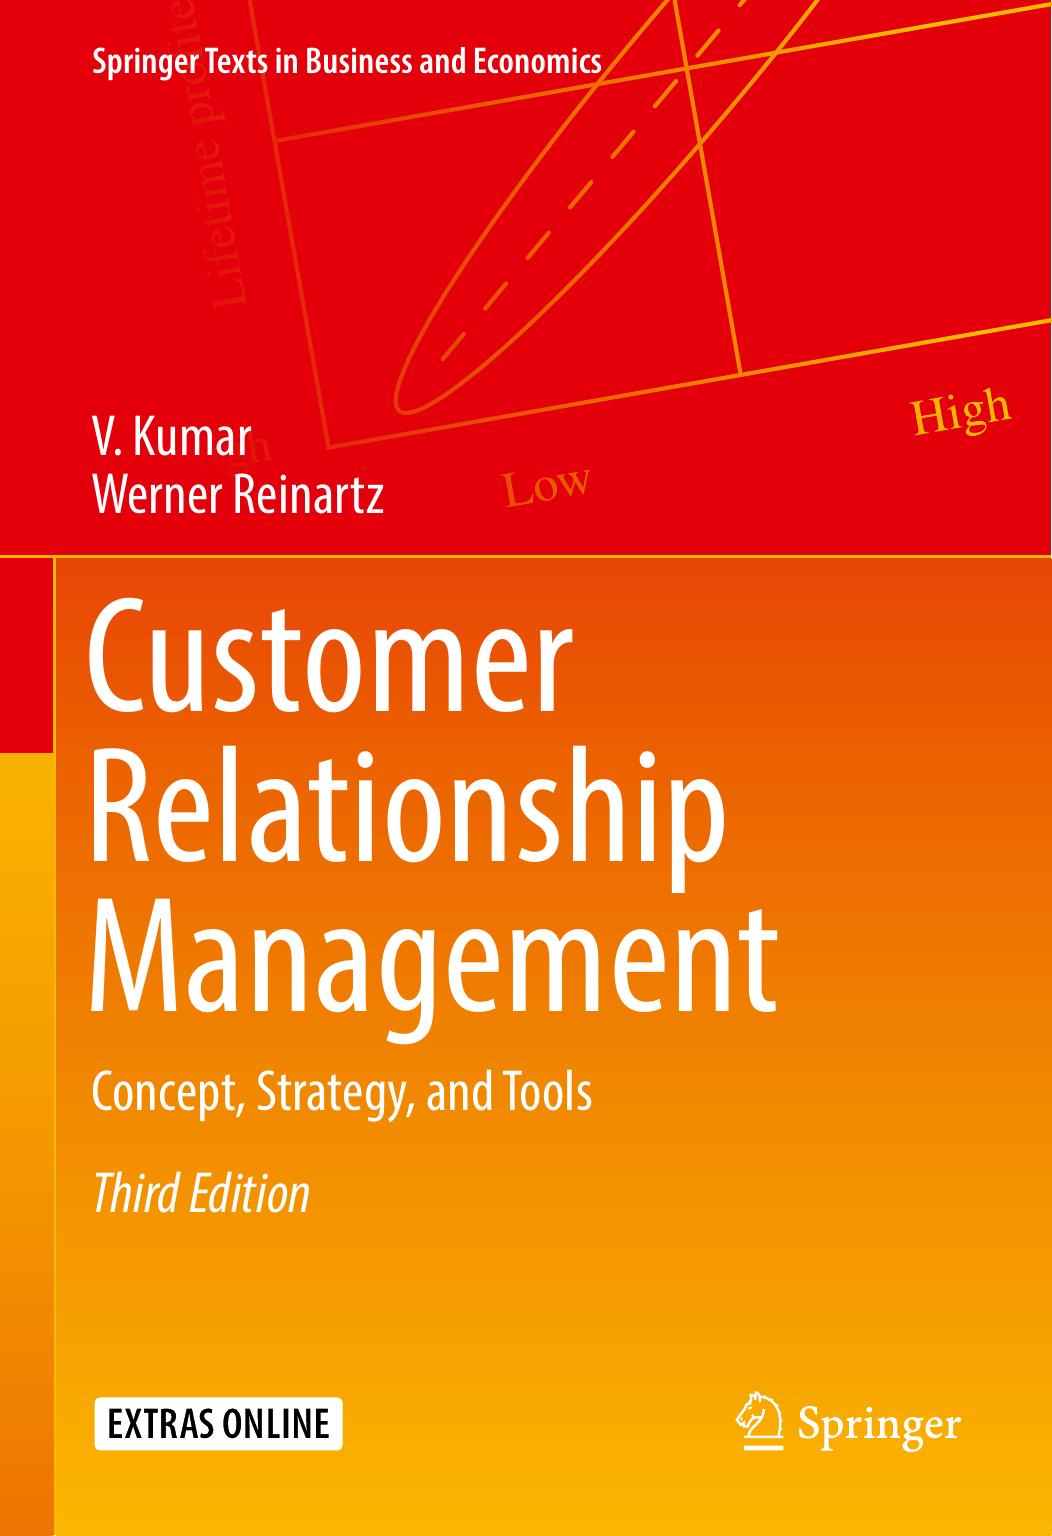 Customer Relationship Management by V. Kumar & Werner Reinartz